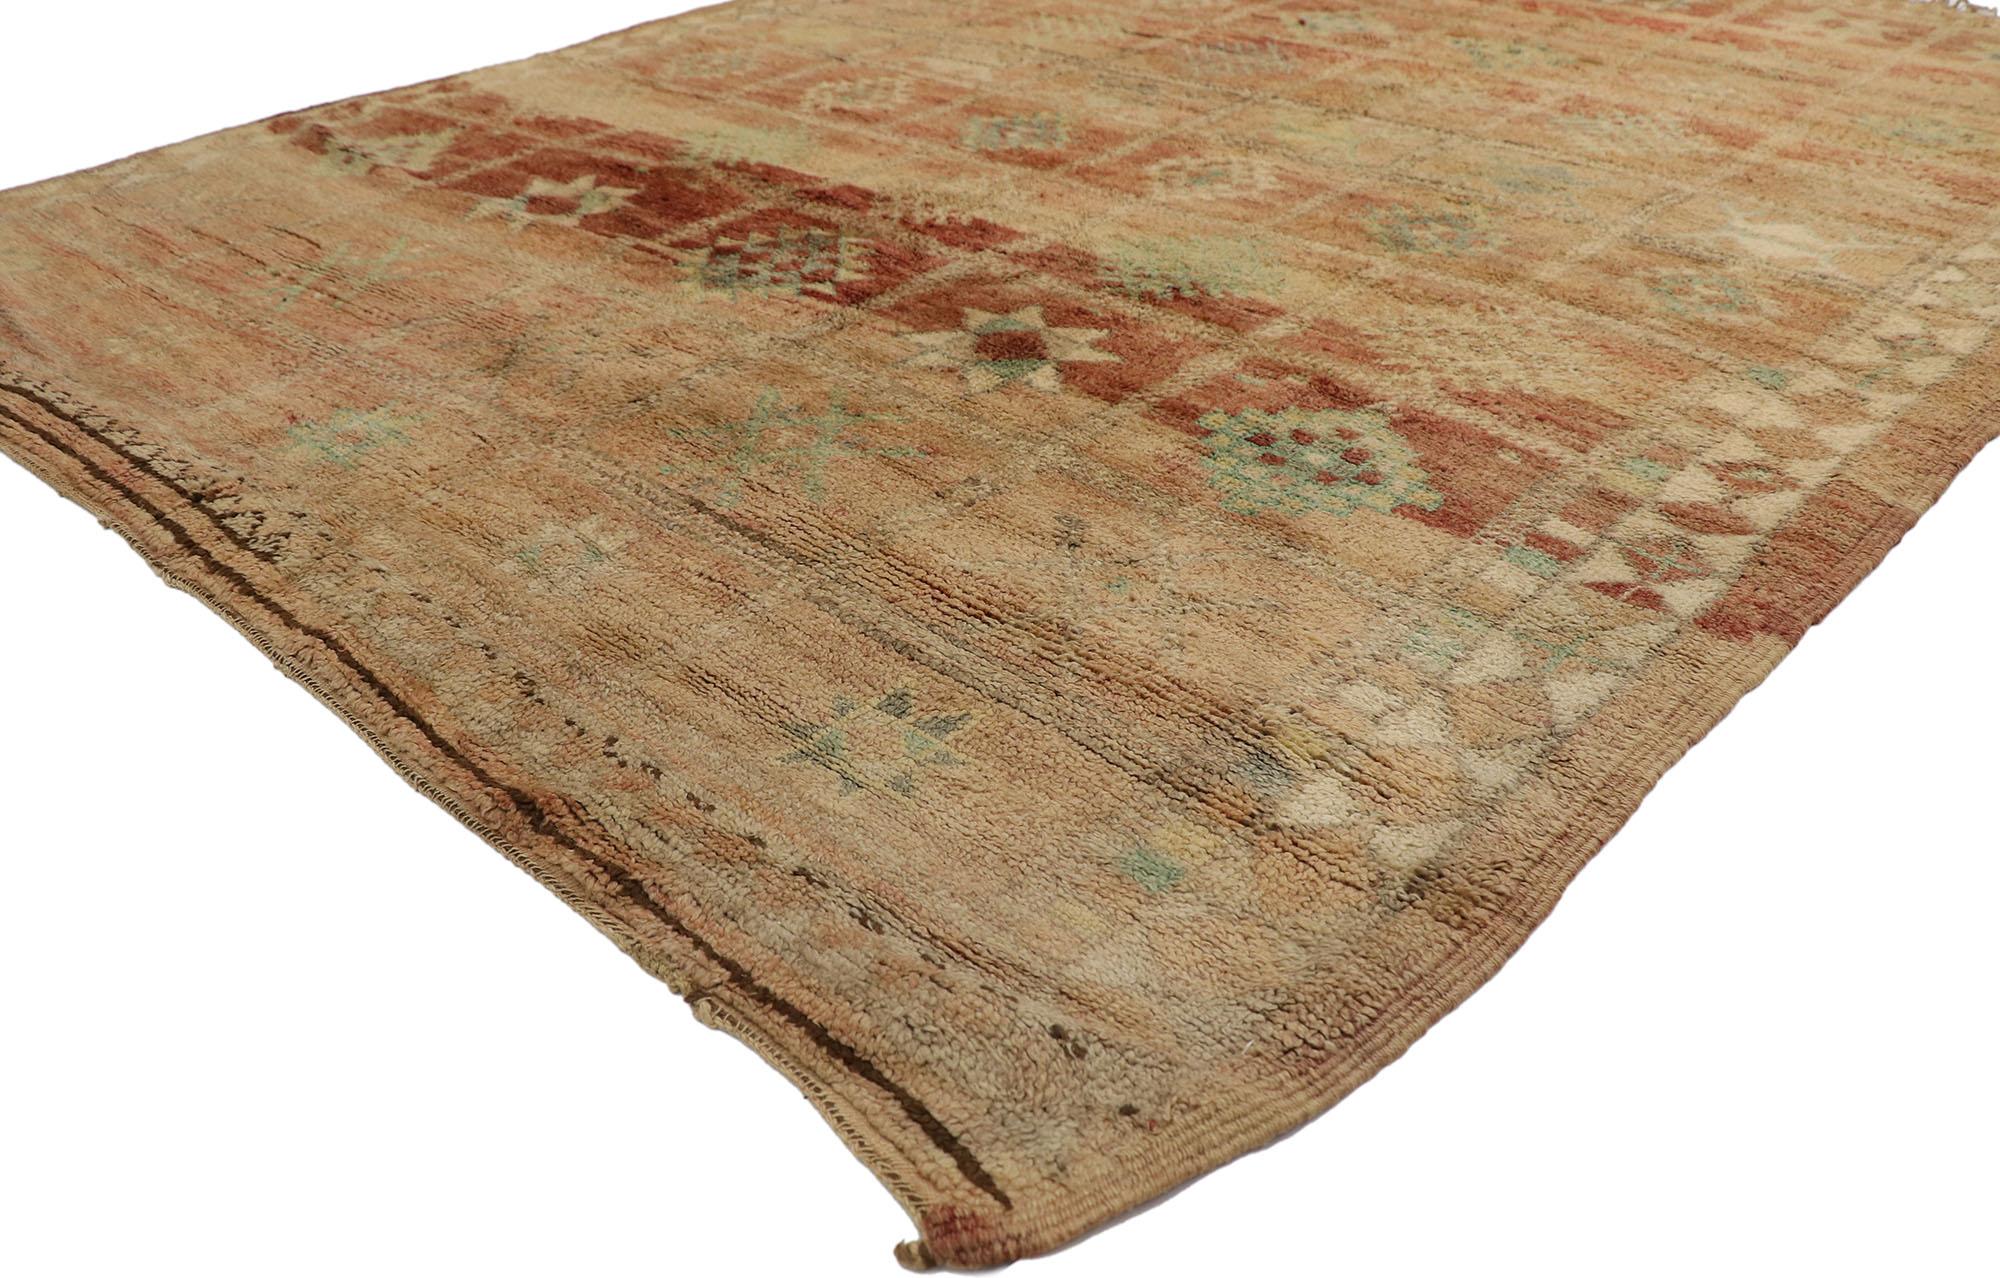 21442 Vintage Beni MGuild Marokkanischer Teppich, 06'06 x 08'07.
Dieser marokkanische Teppich aus handgeknüpfter Wolle im Vintage-Stil von Beni MGuild vereint einen würzigen globalen Stil mit organischer Moderne. Die esoterische Symbolik und die von